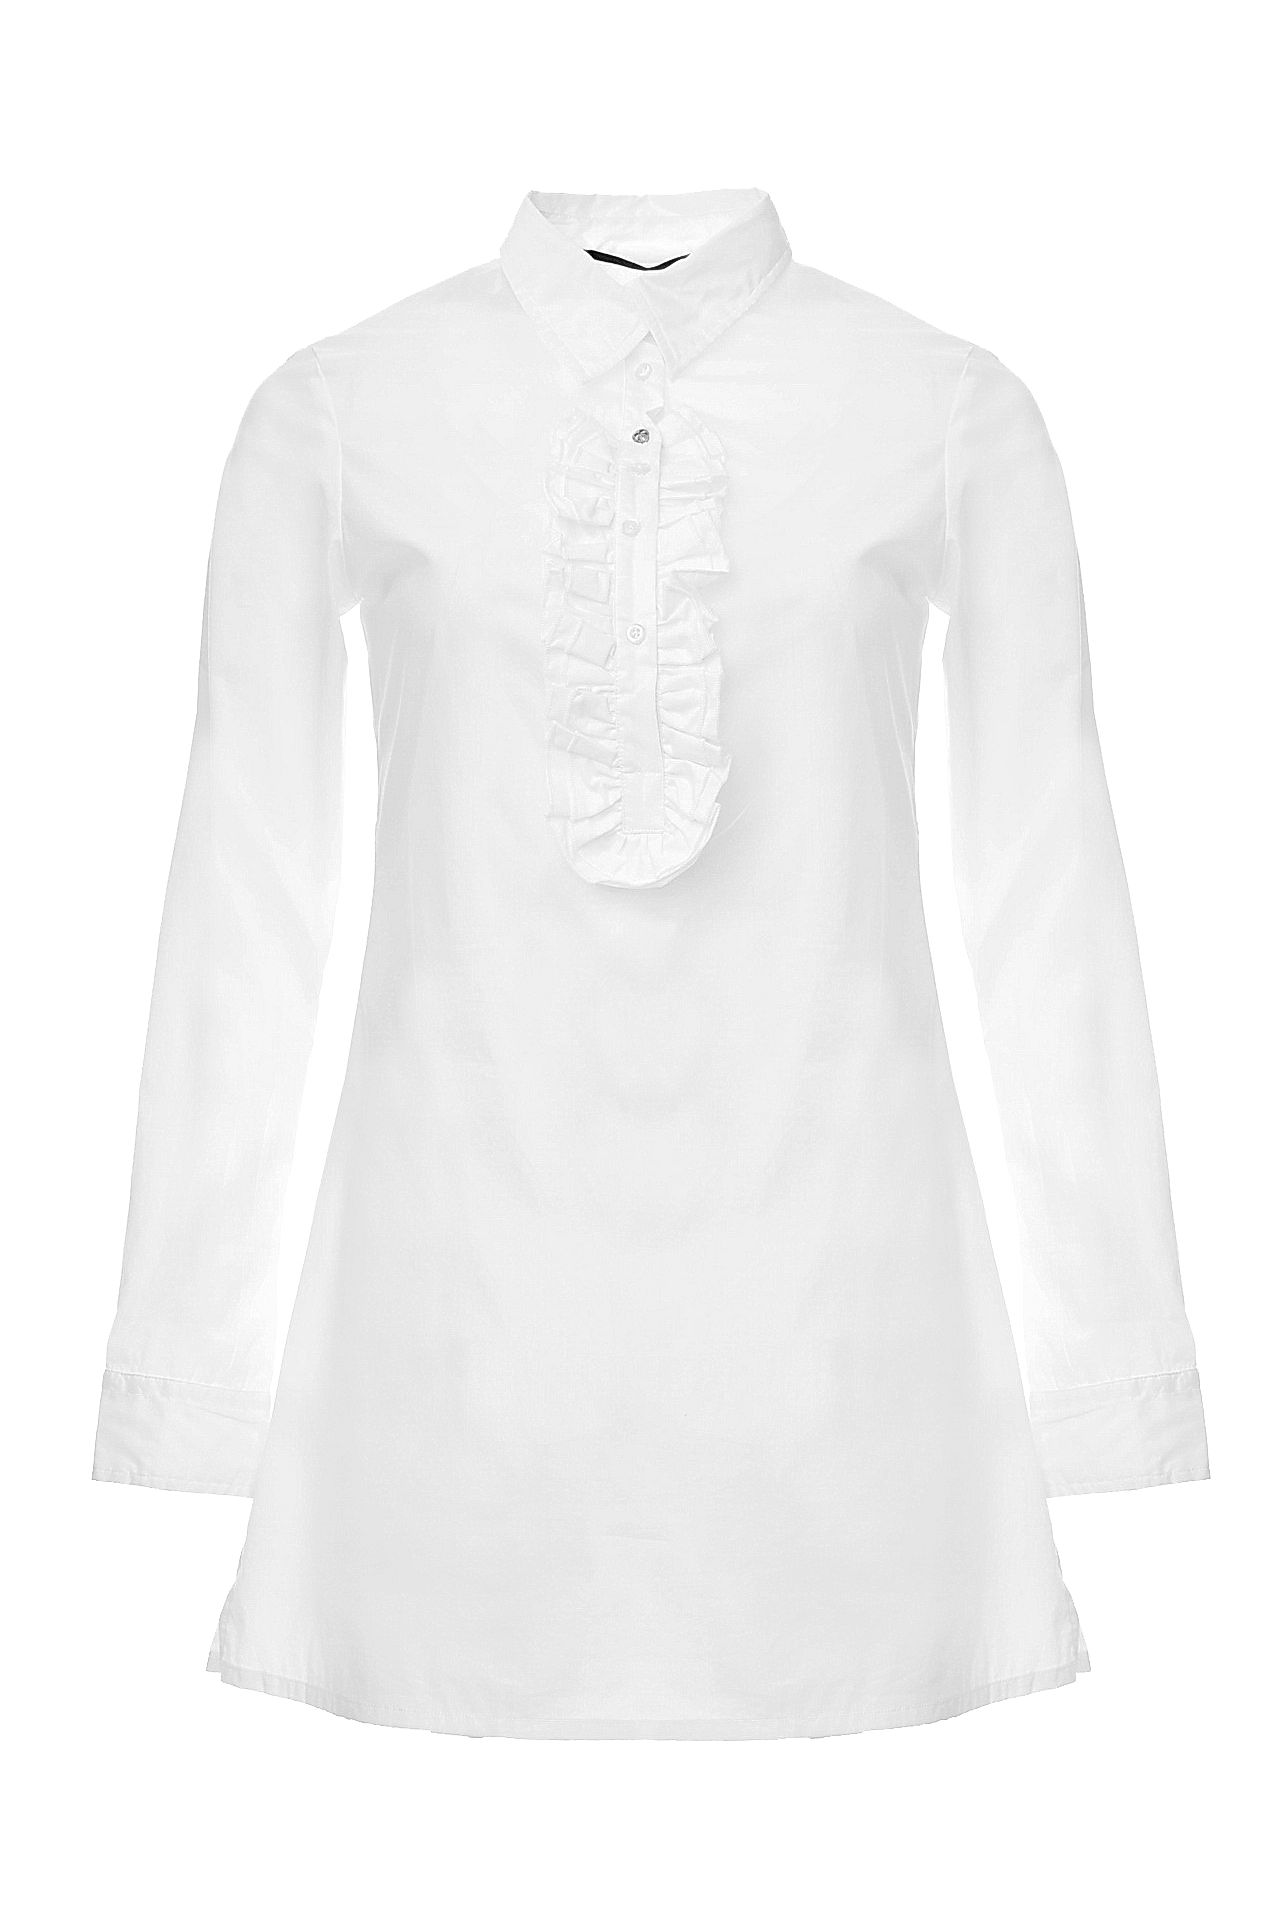 Одежда женская Рубашка RA-RE (WB6907/10.2). Купить за 7450 руб.